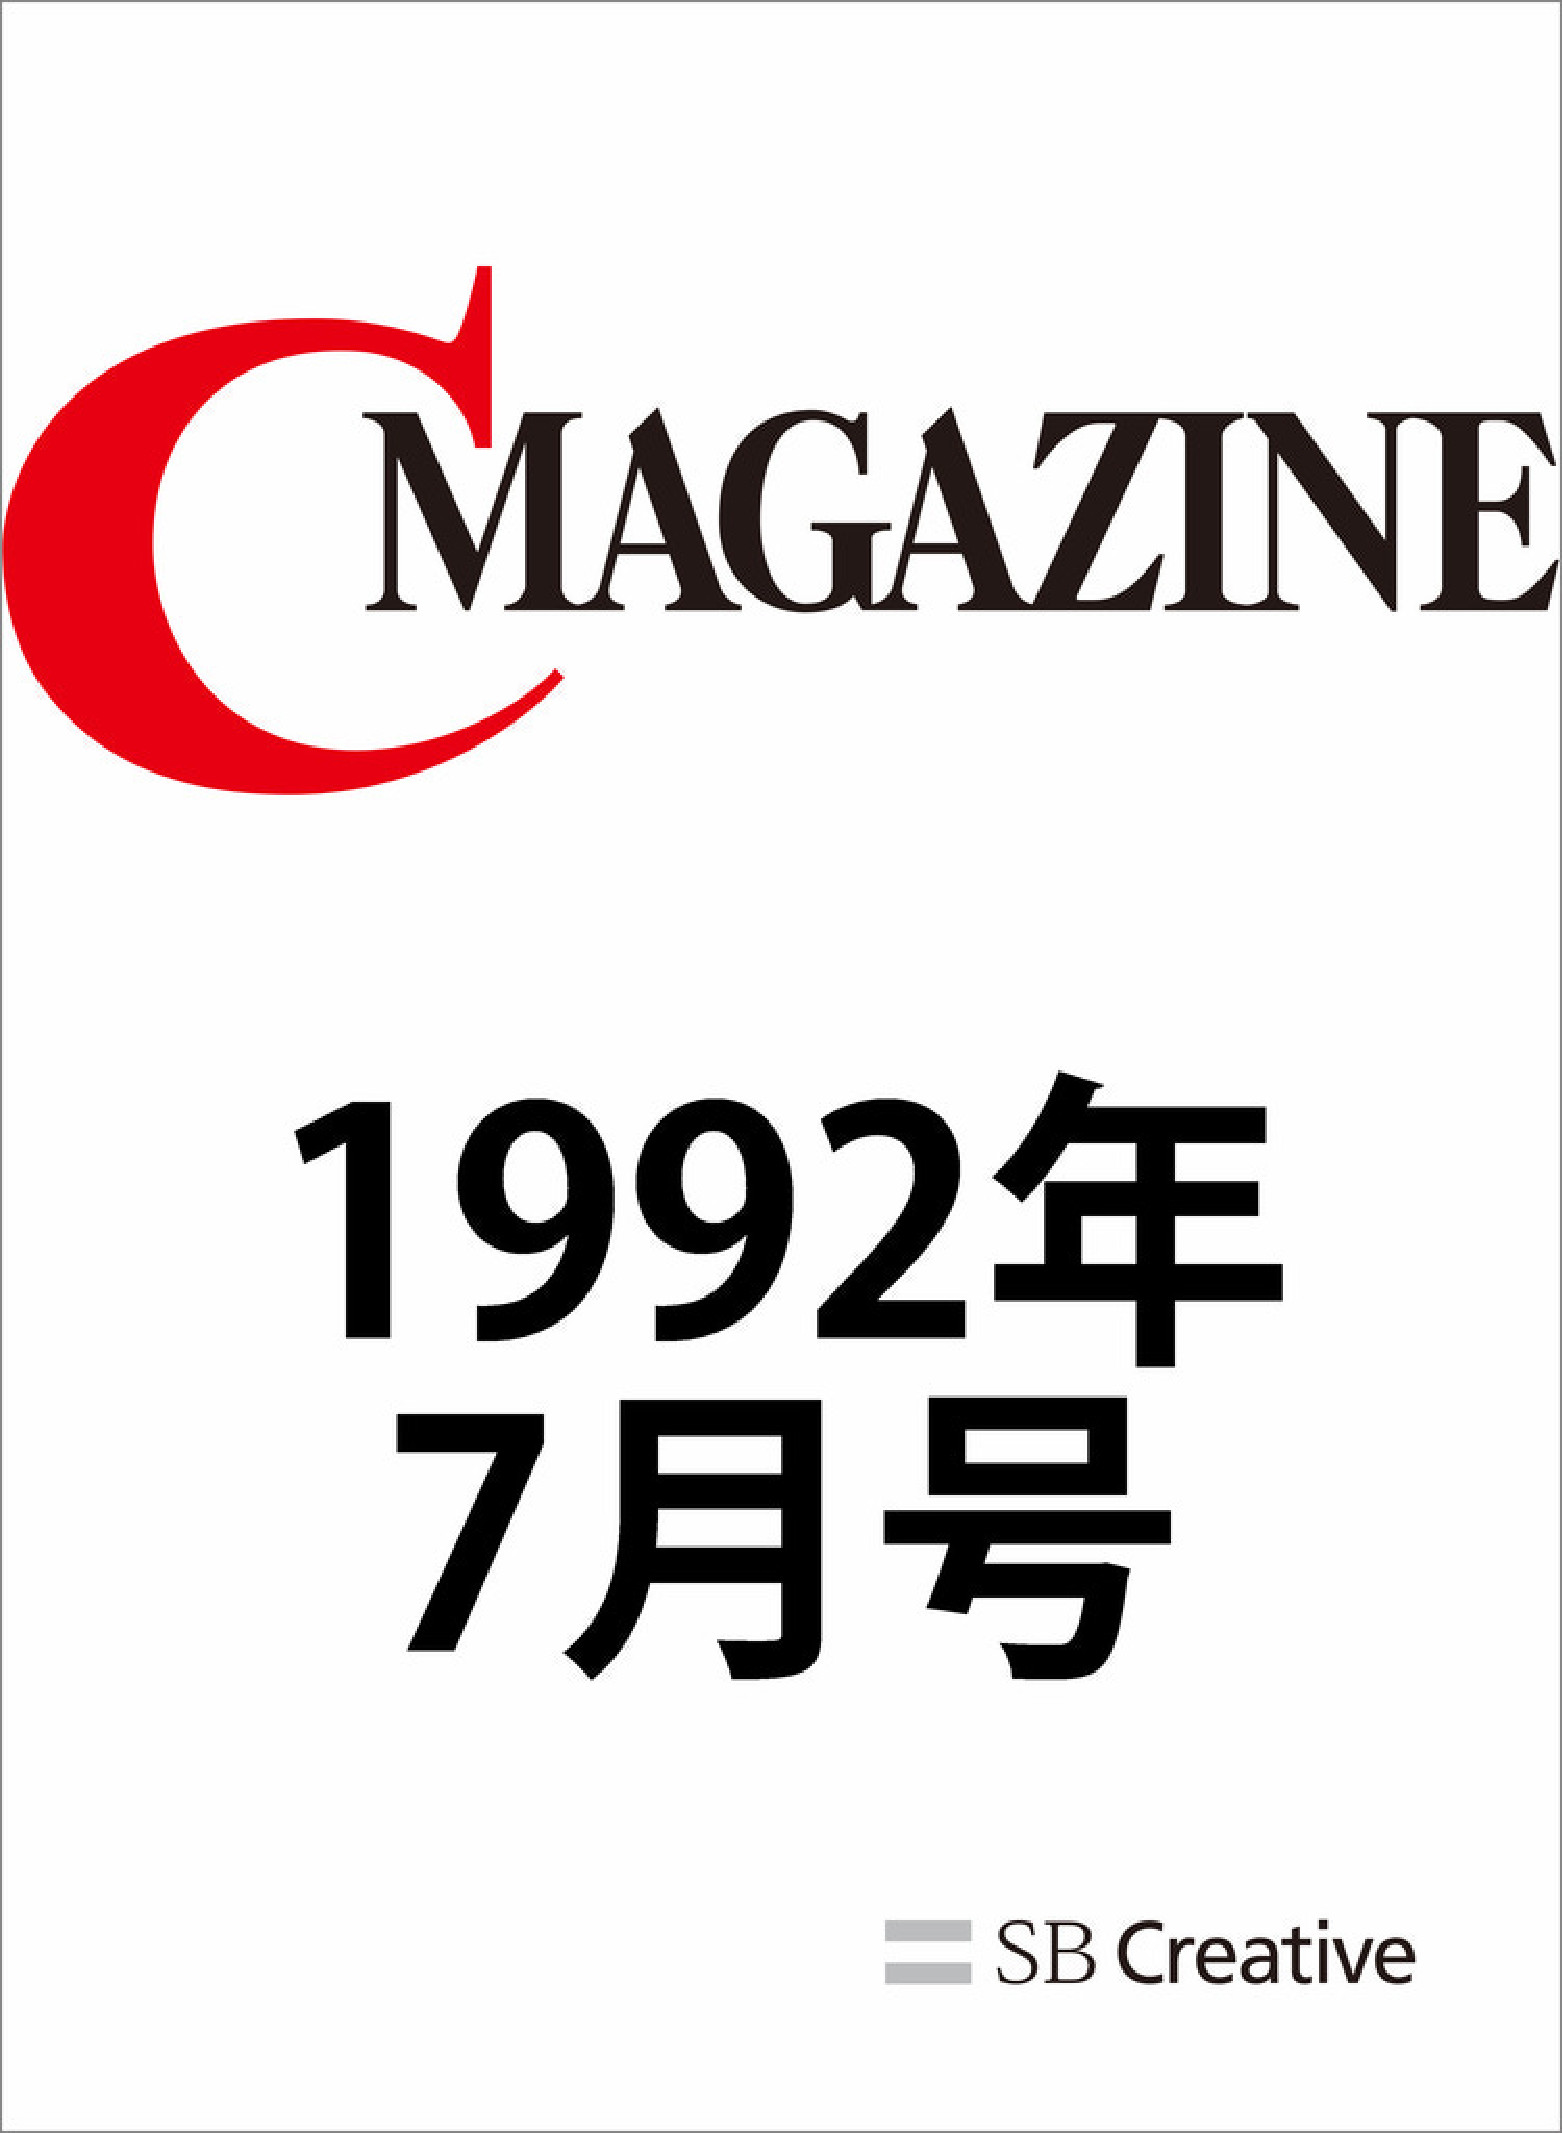 月刊C Magazine 1992年7月号【委託】 - 達人出版会